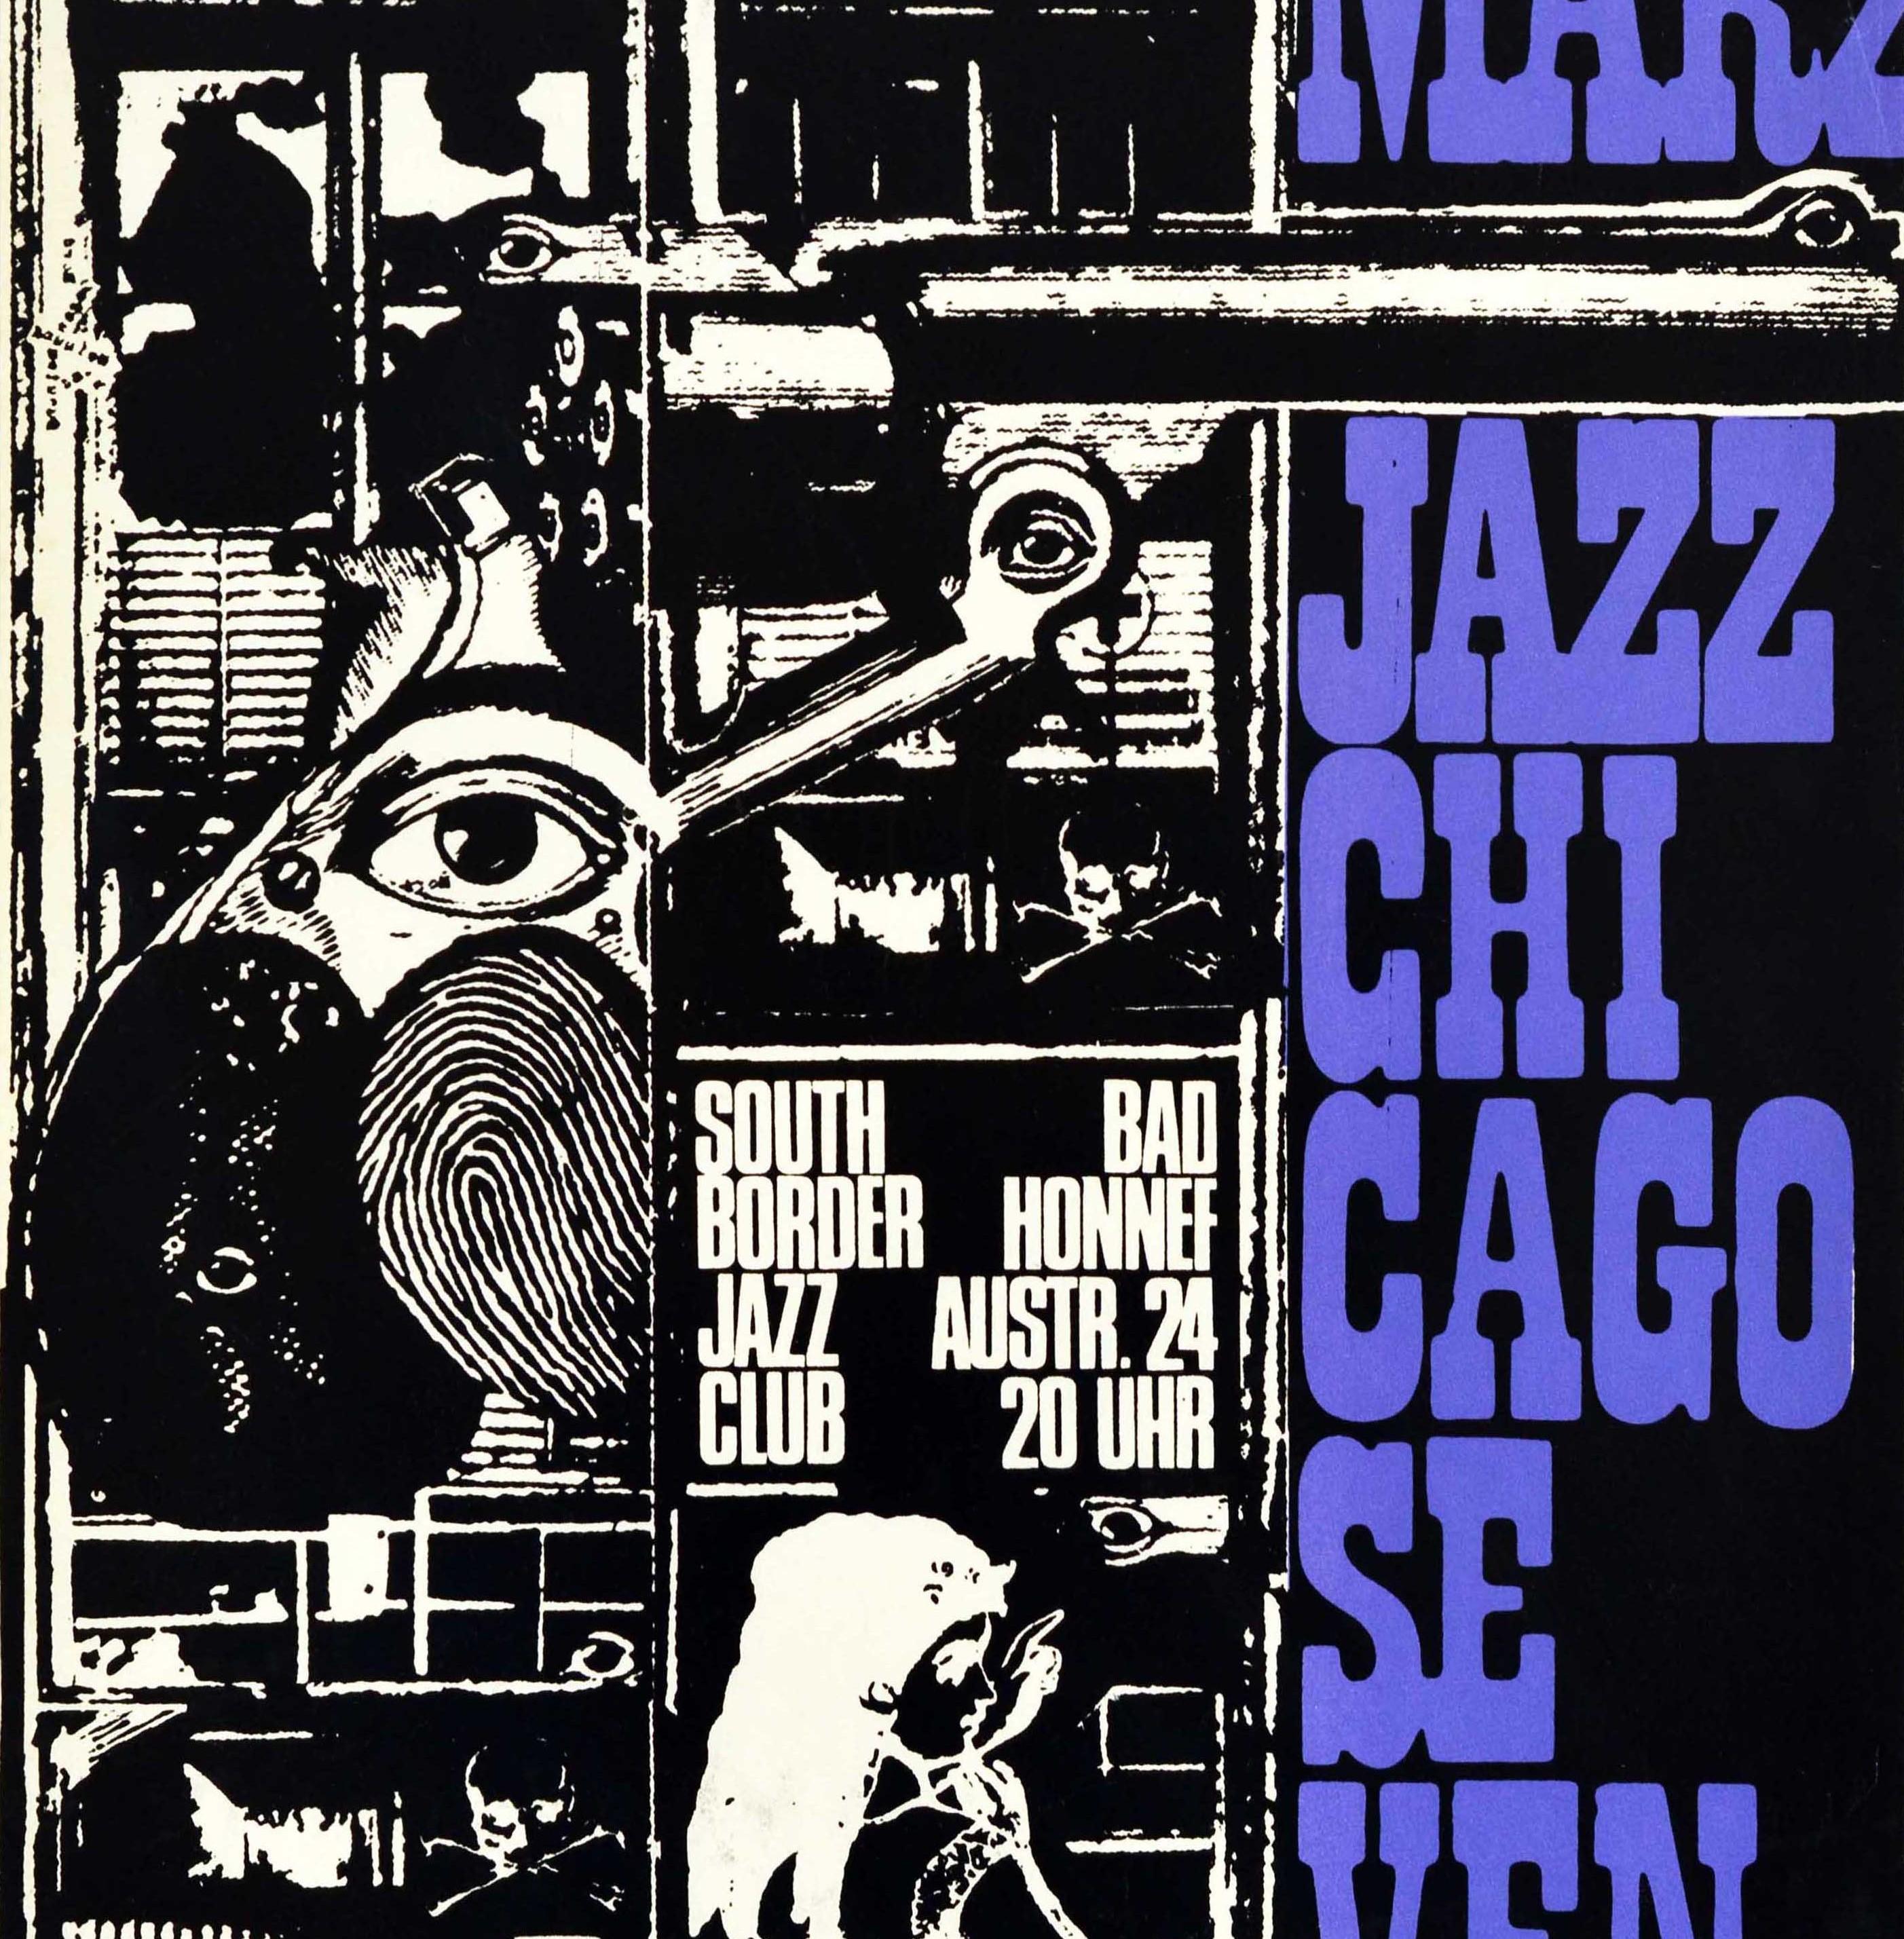 Affiche publicitaire originale pour le Jazz Chicago Seven au South Border Jazz Club Bad Honnef le 11 mars, présentant un design abstrait en noir et blanc avec le texte du titre en gras sur le côté et dans l'image. Ouvert en 1968 à Bad Honnef près de